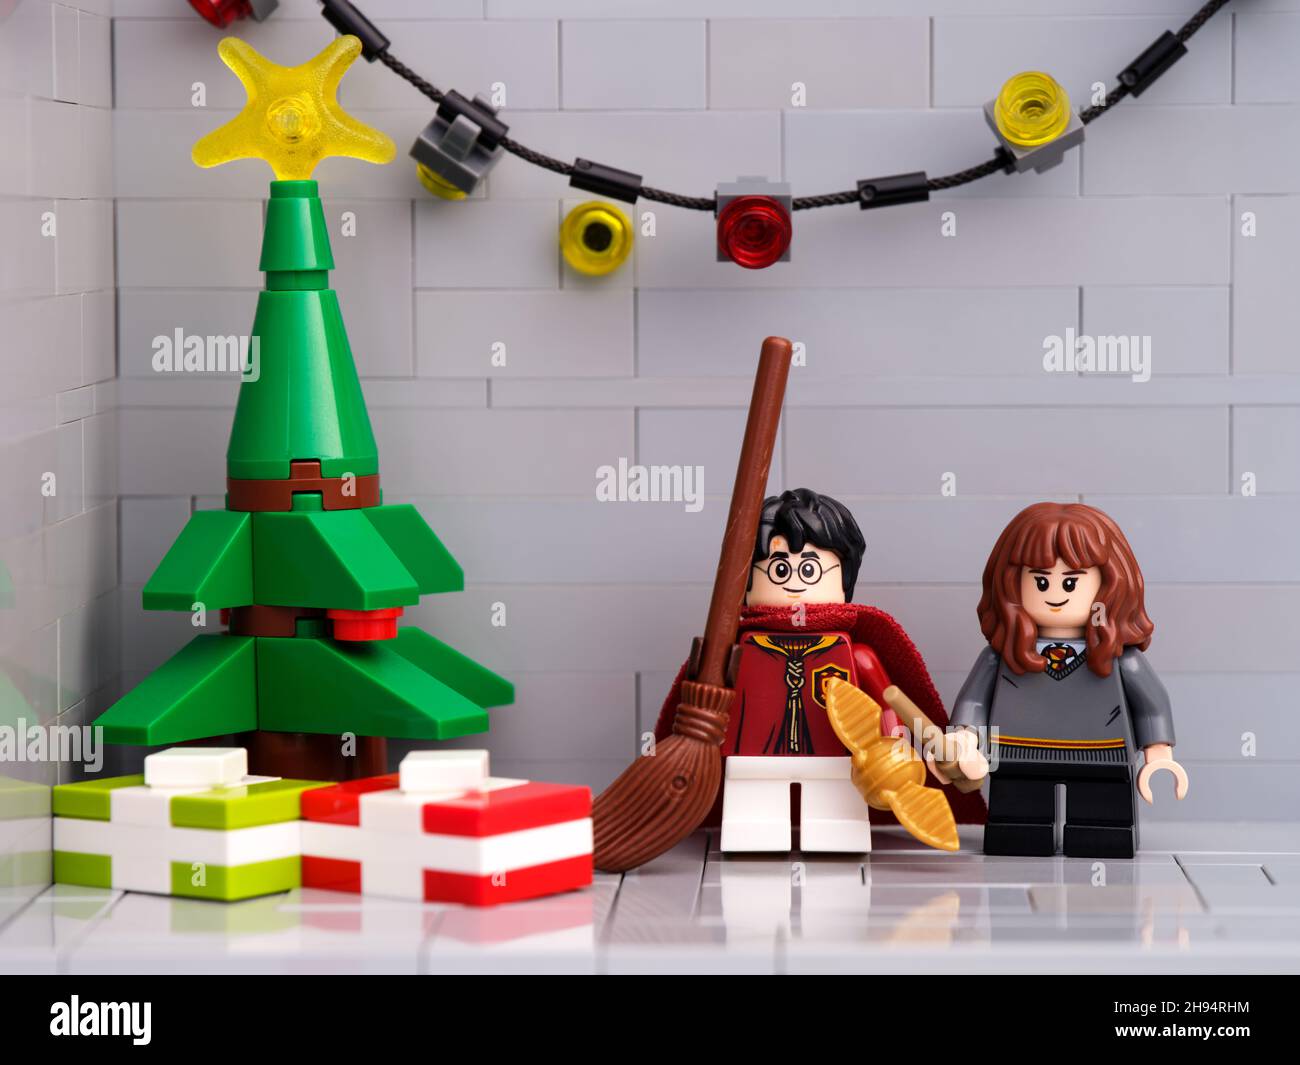 Tambov, Fédération de Russie - 01 décembre 2021 Lego Harry Potter et Hermione Granger Minifigures debout près d'un arbre de Noël avec présent Banque D'Images